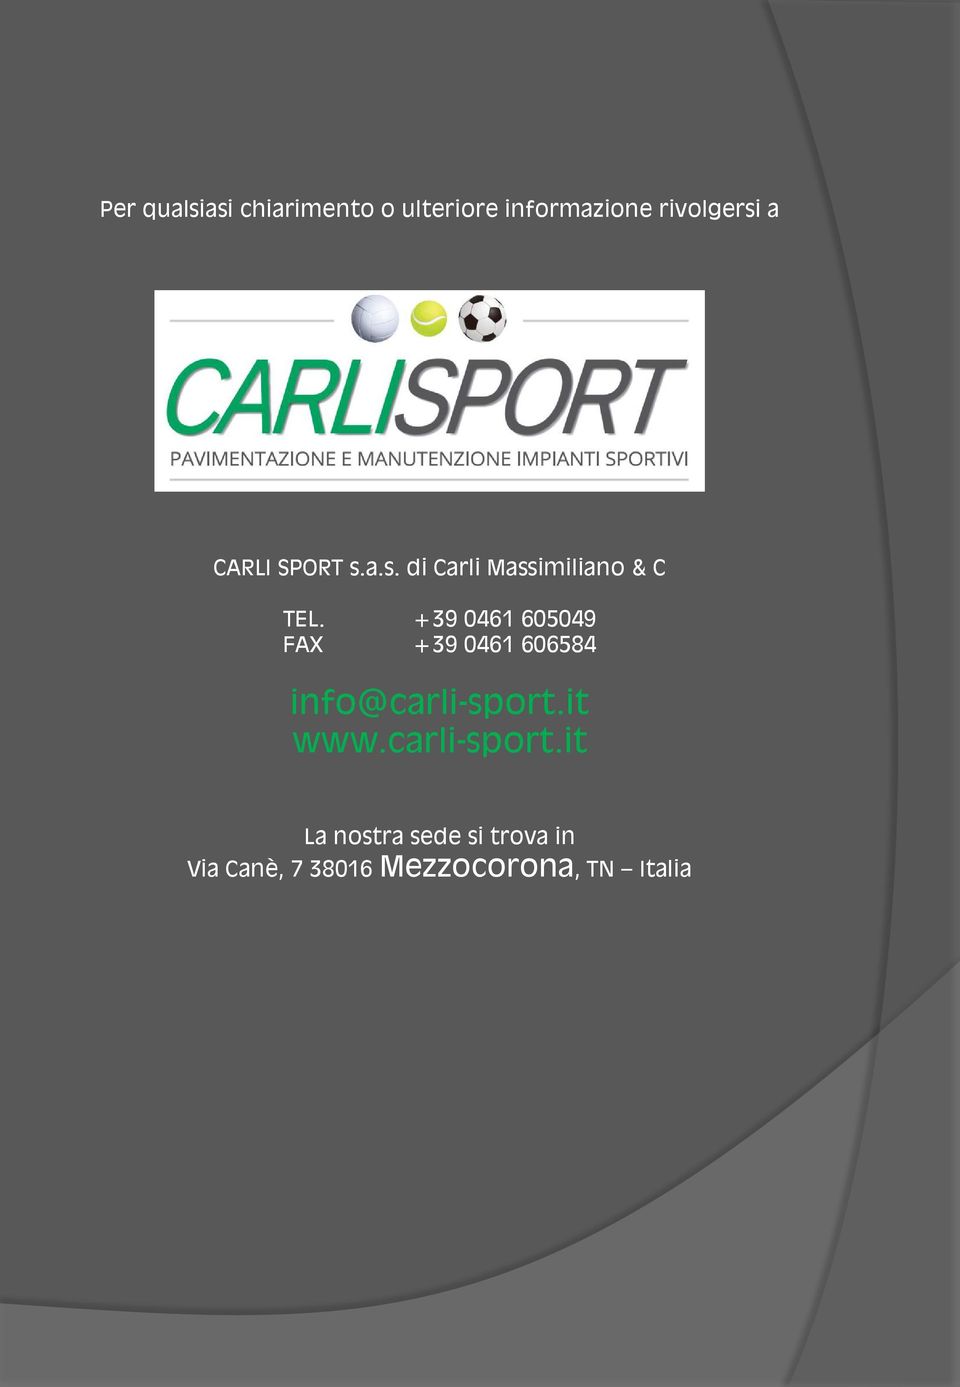 +39 0461 605049 FAX +39 0461 606584 info@carli-sport.it www.